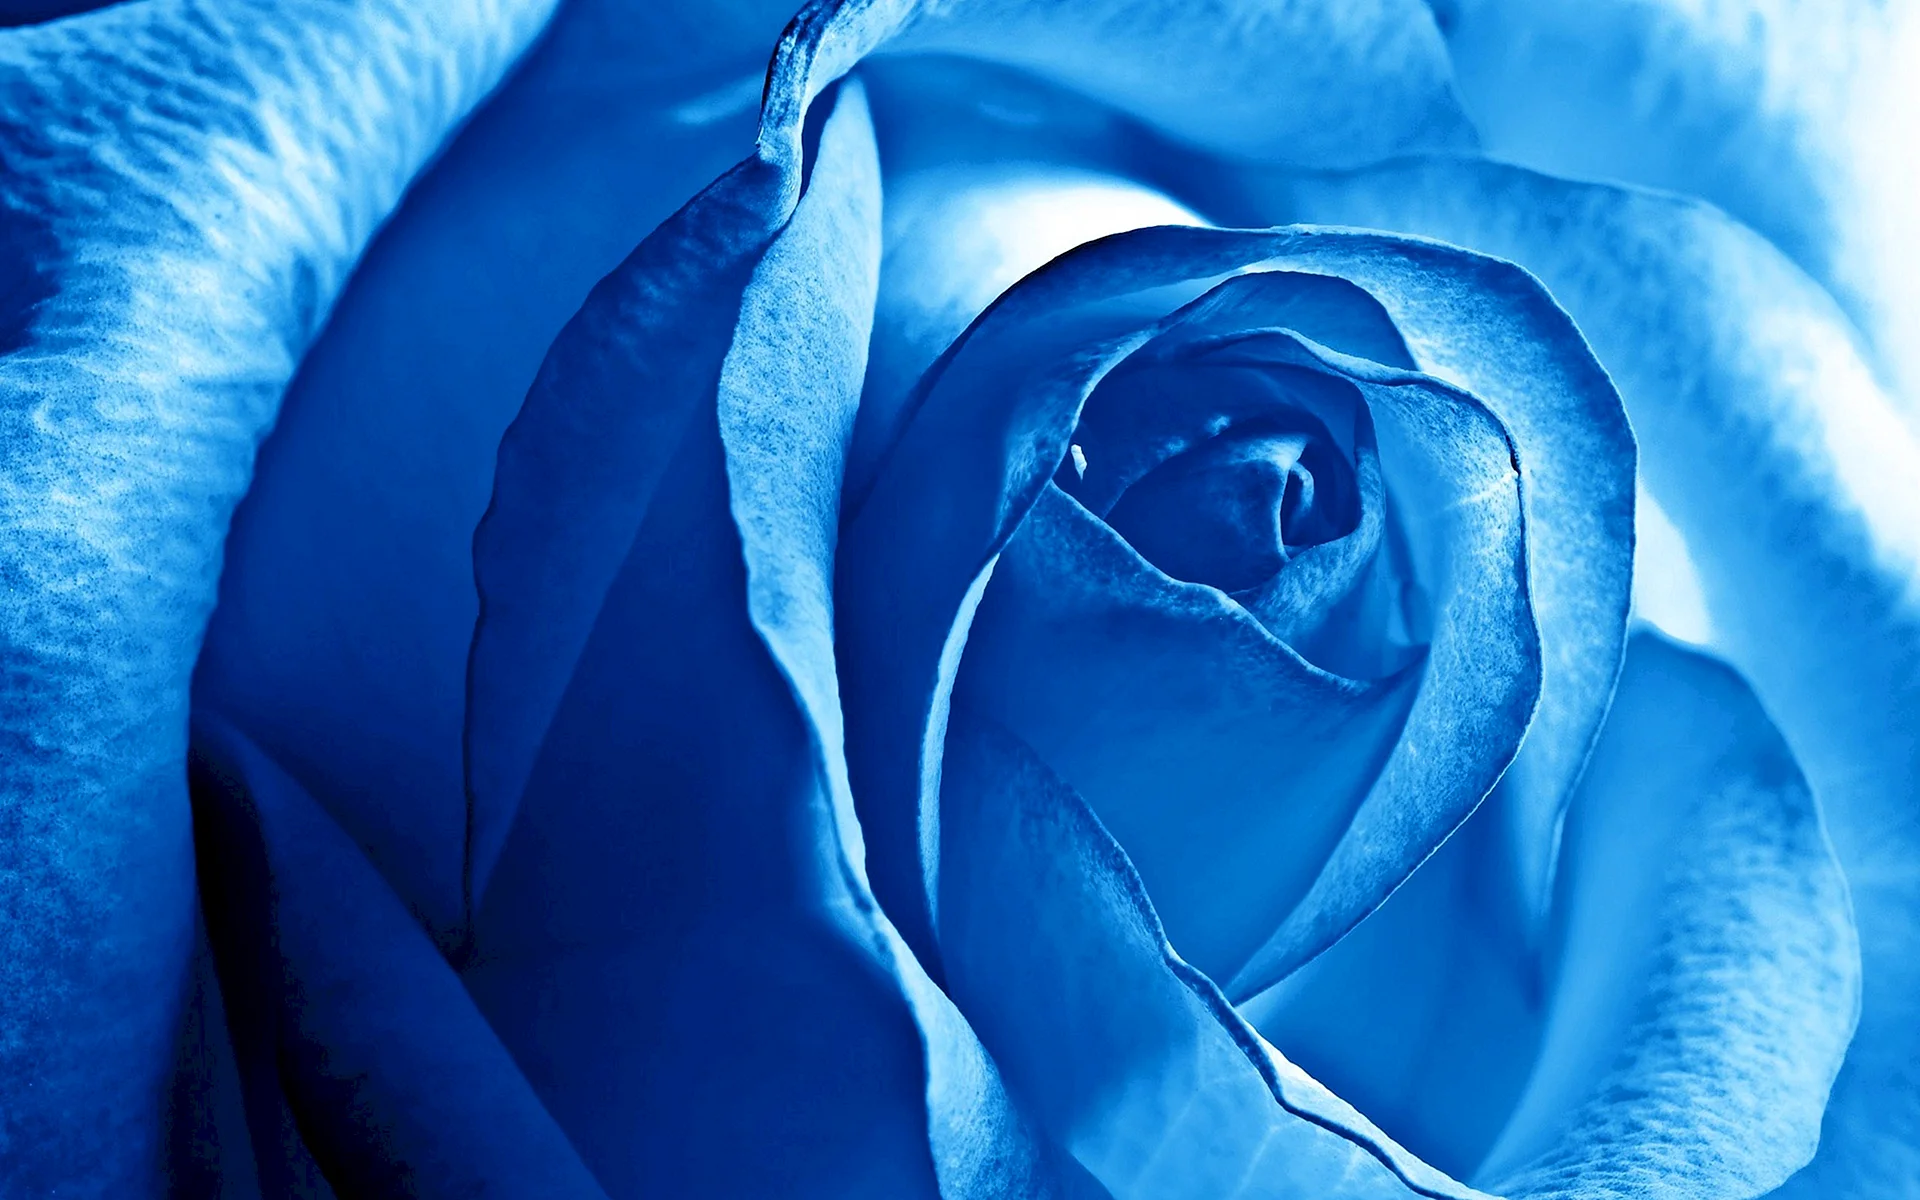 Синяя роза (2017)